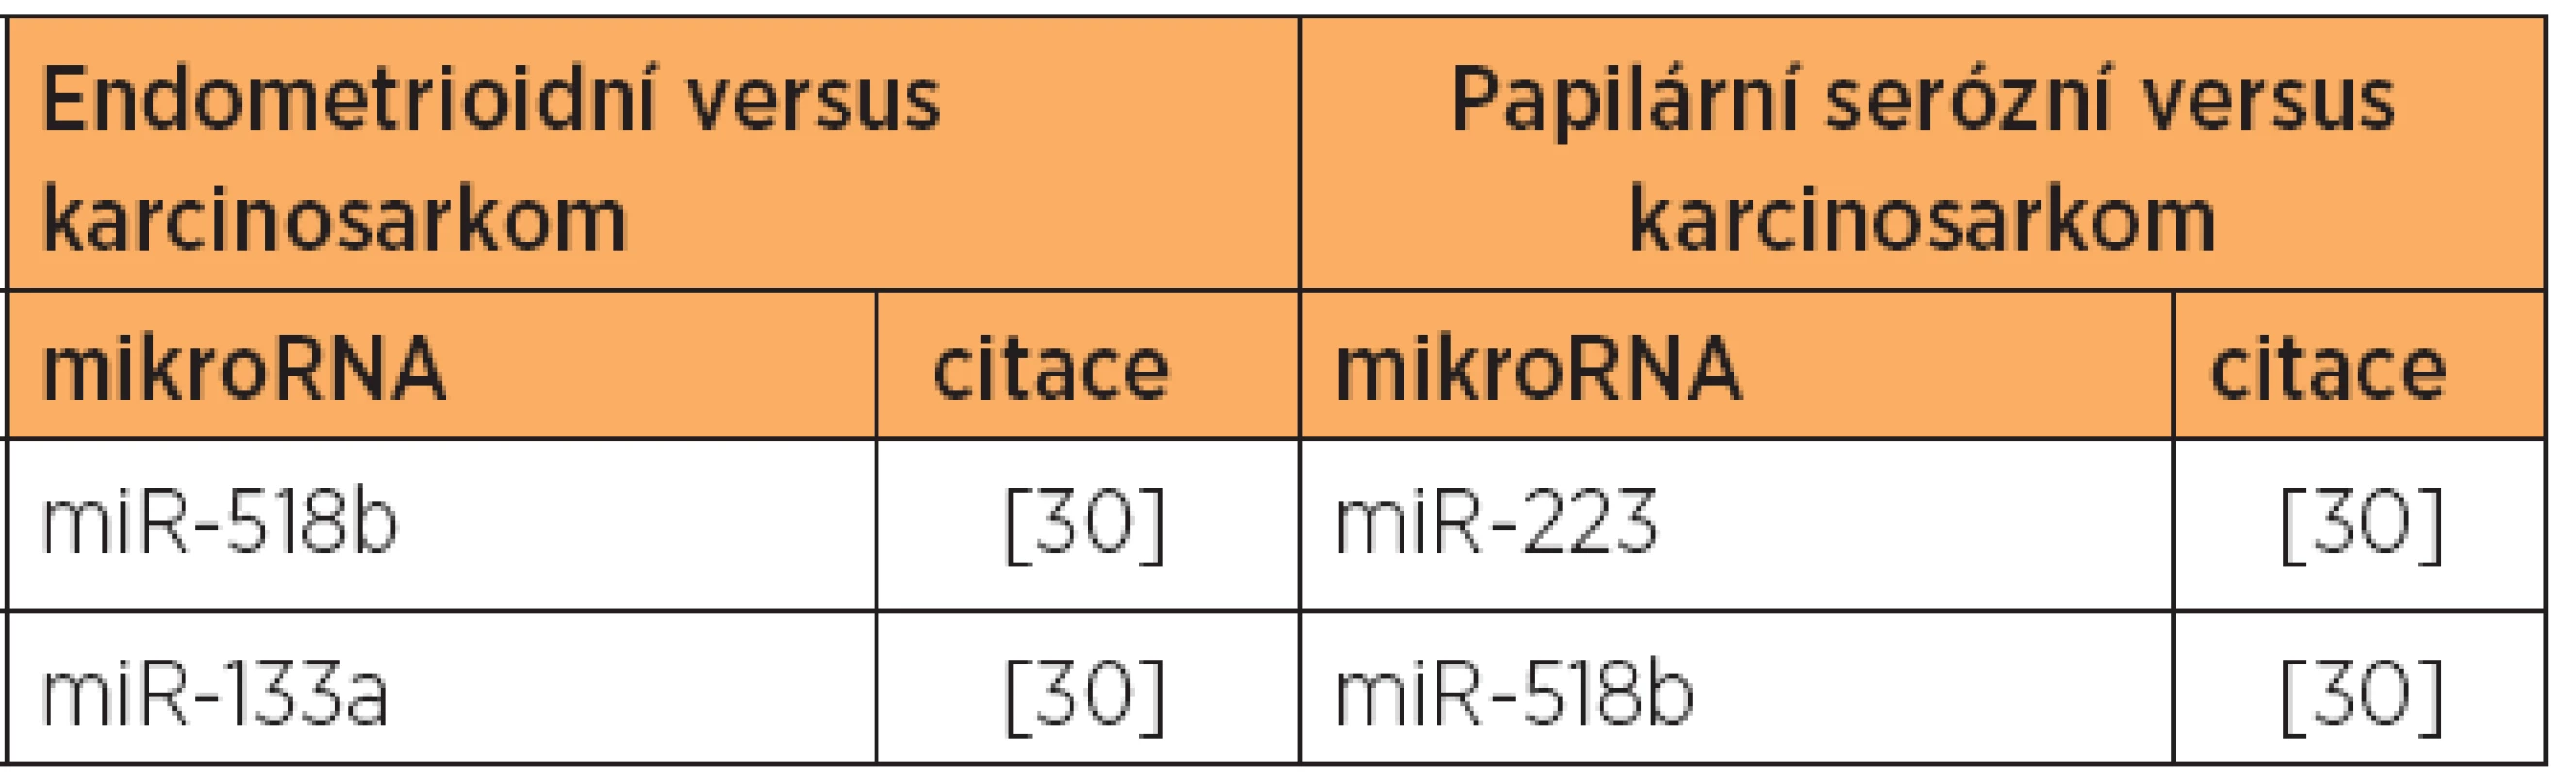 Zvýšená exprese mikroRNA - endometrioidní a serózní typ versus karcinosarkom